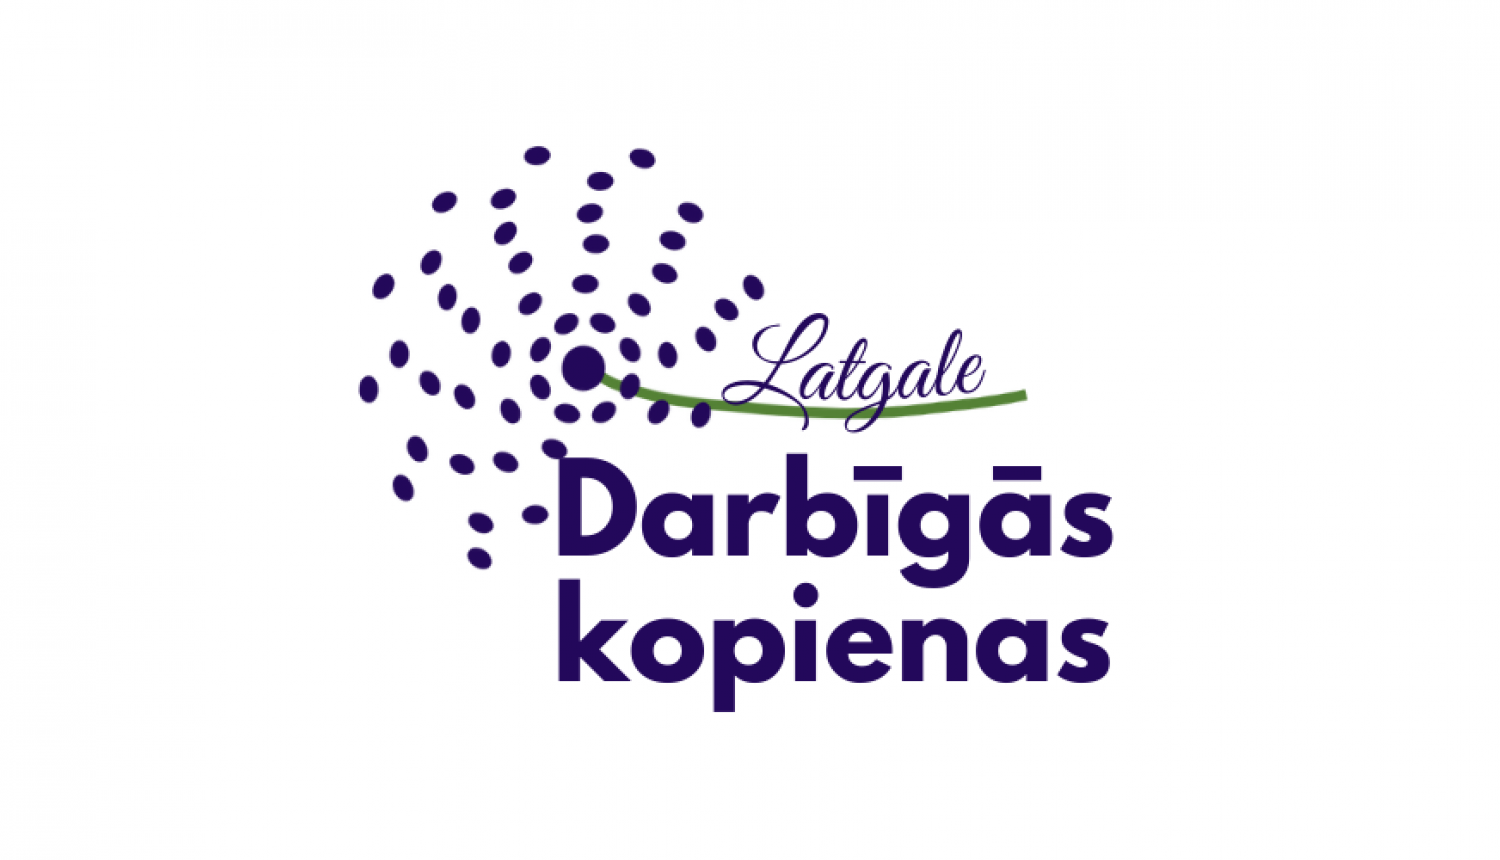 "Darbīgās kopienas Latgale" logo